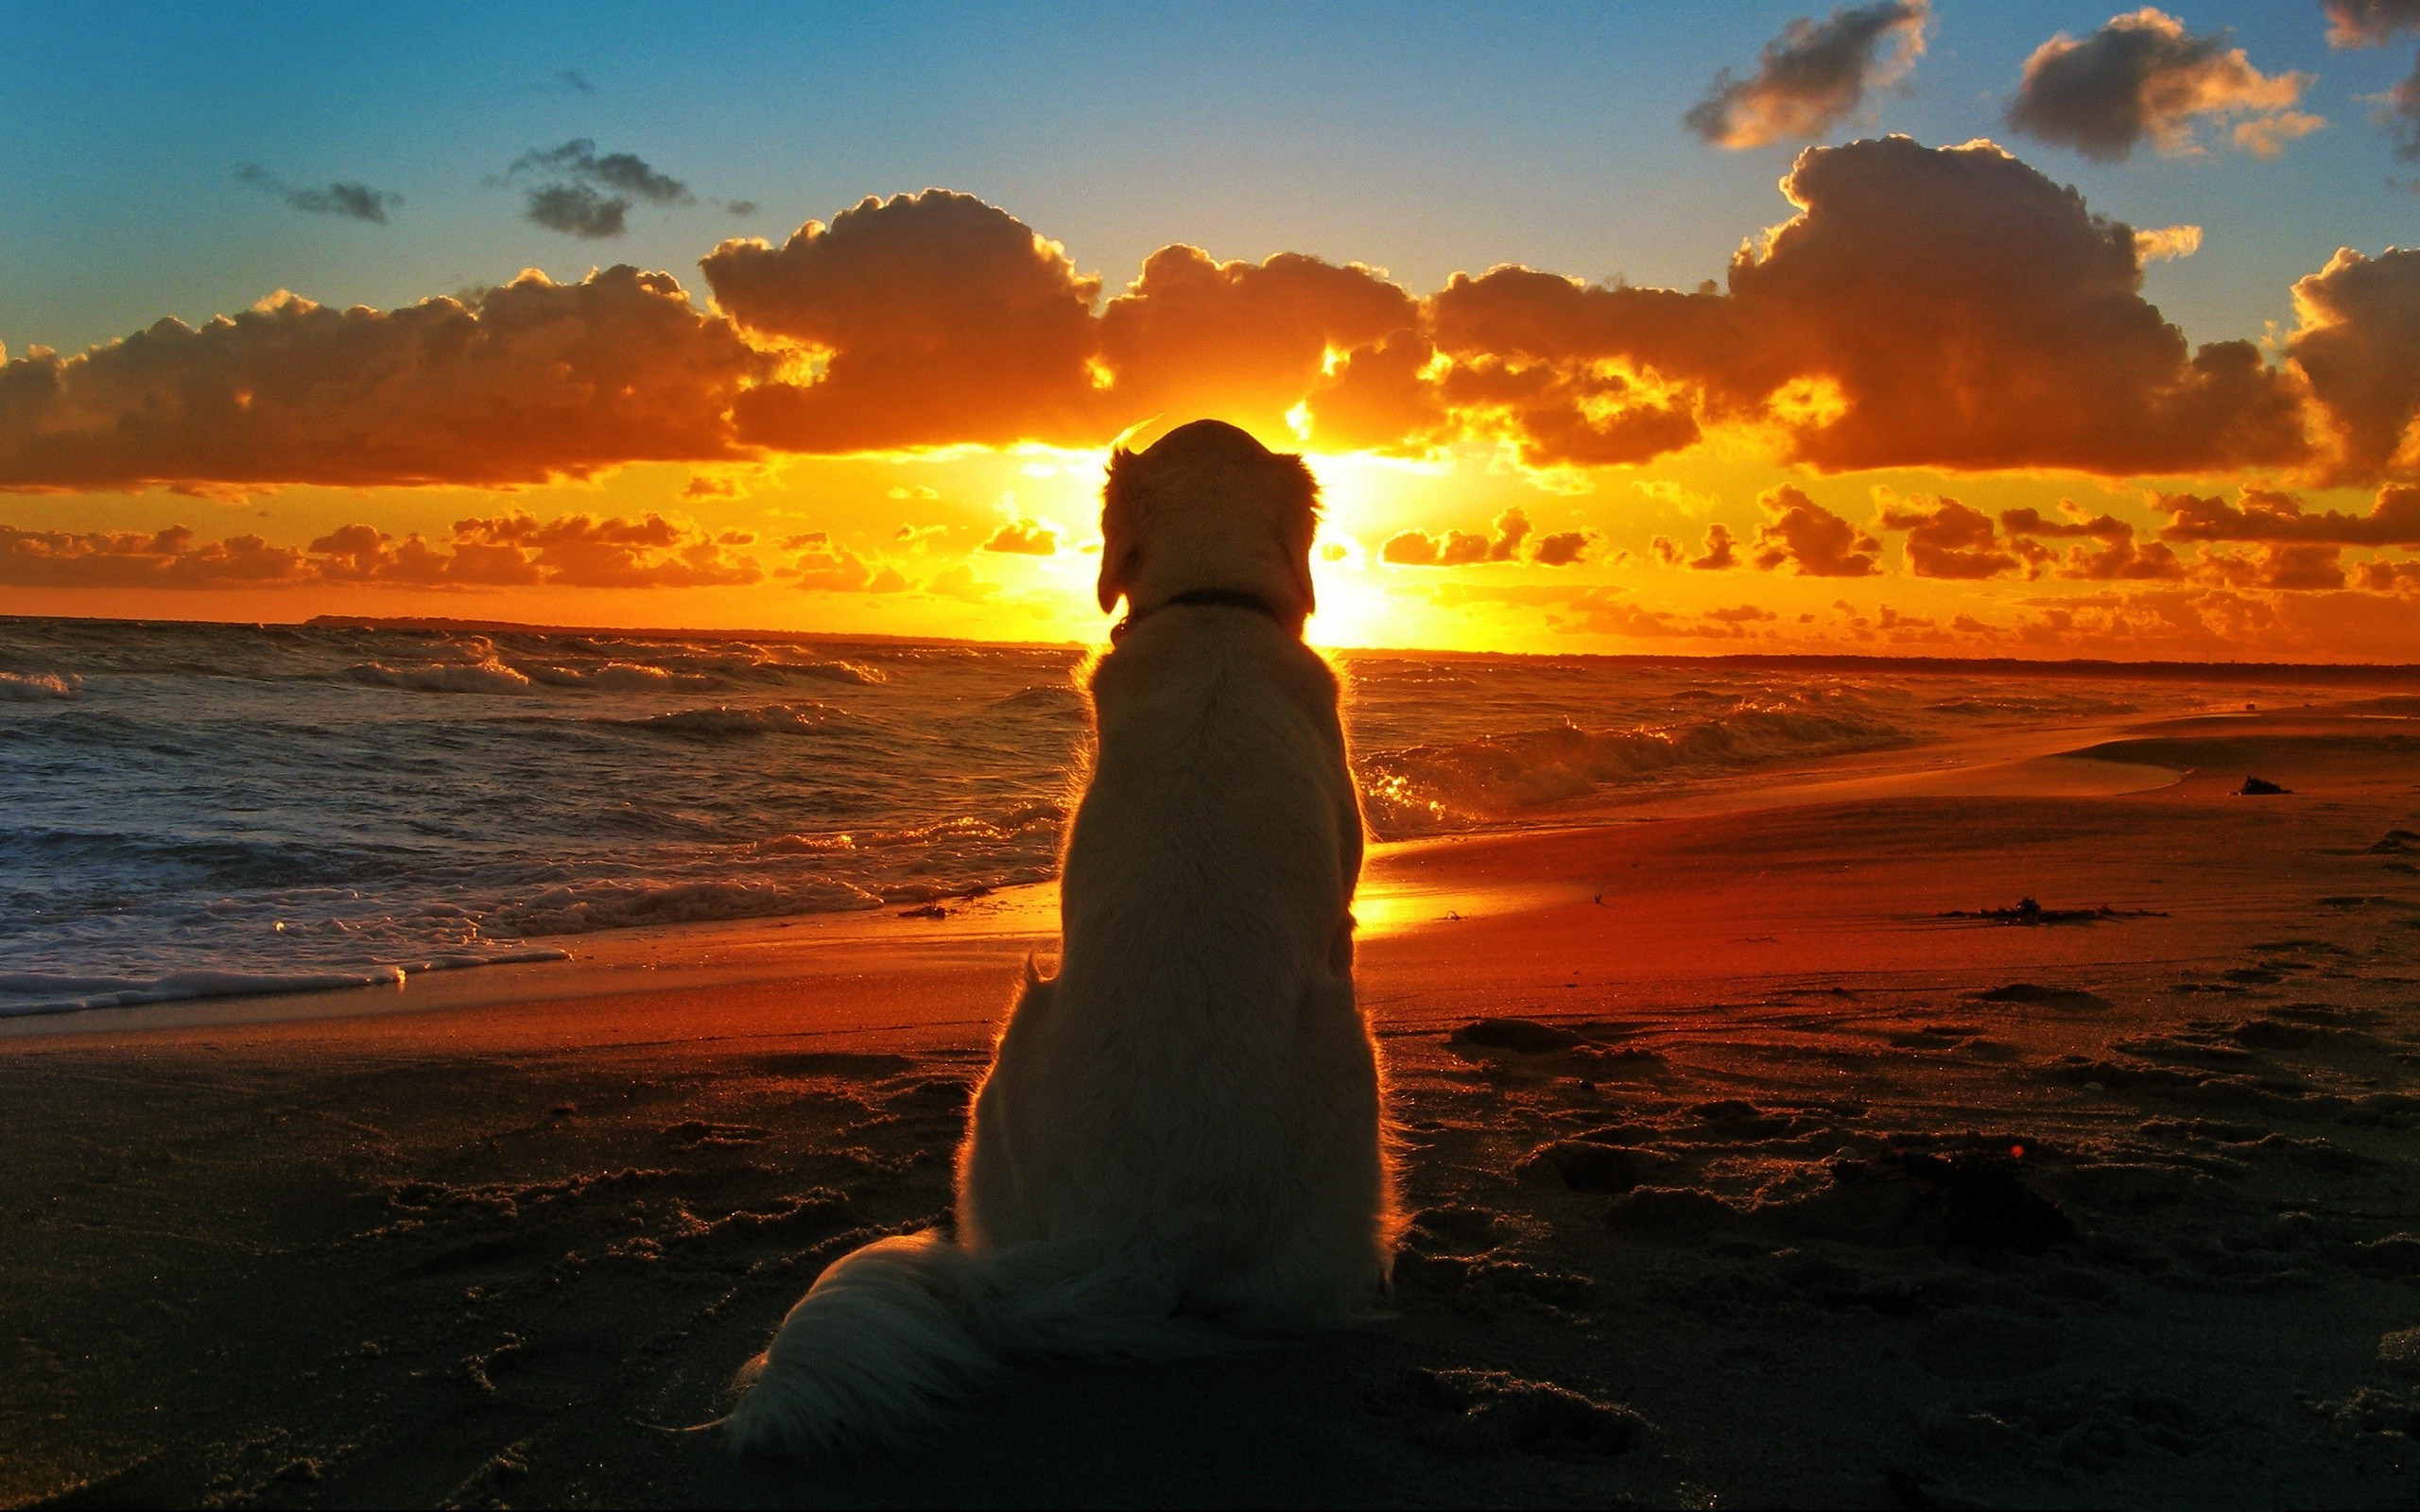 dog sunset beach waves clouds depth of field Wallpaper